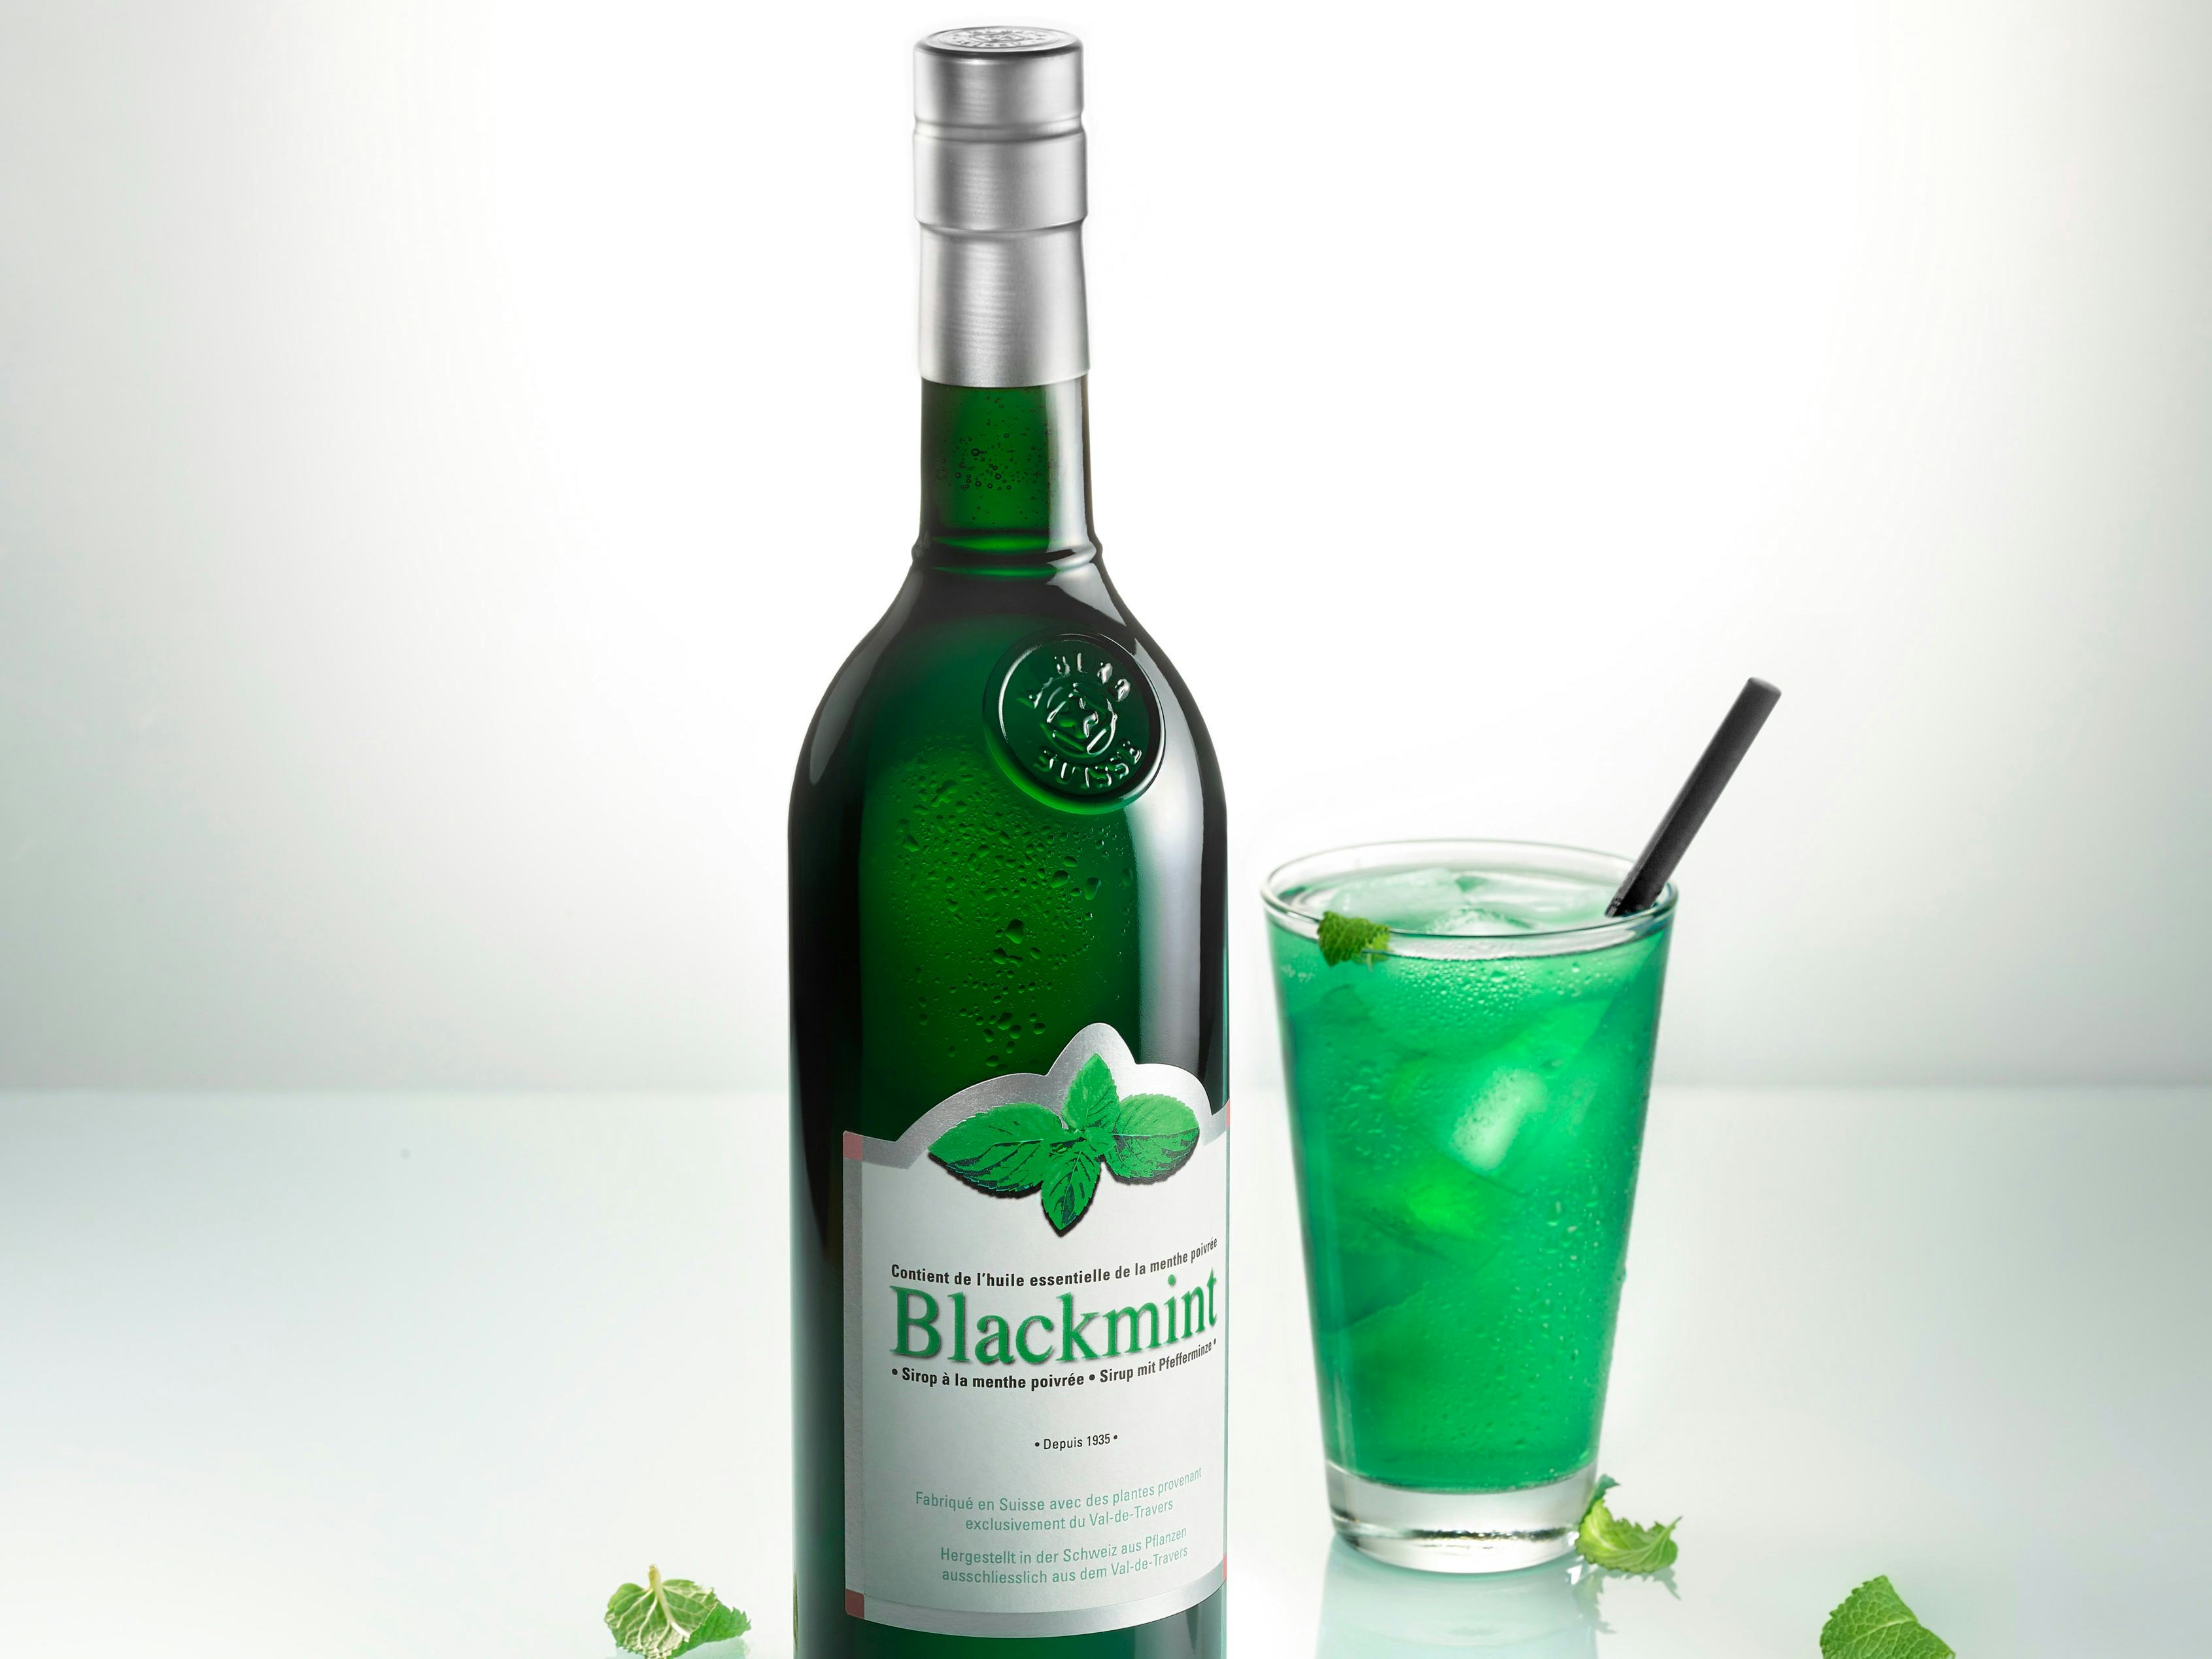 Blackmint Sirop de menthe s/alcool, produit artisanal en vente directe en Suisse